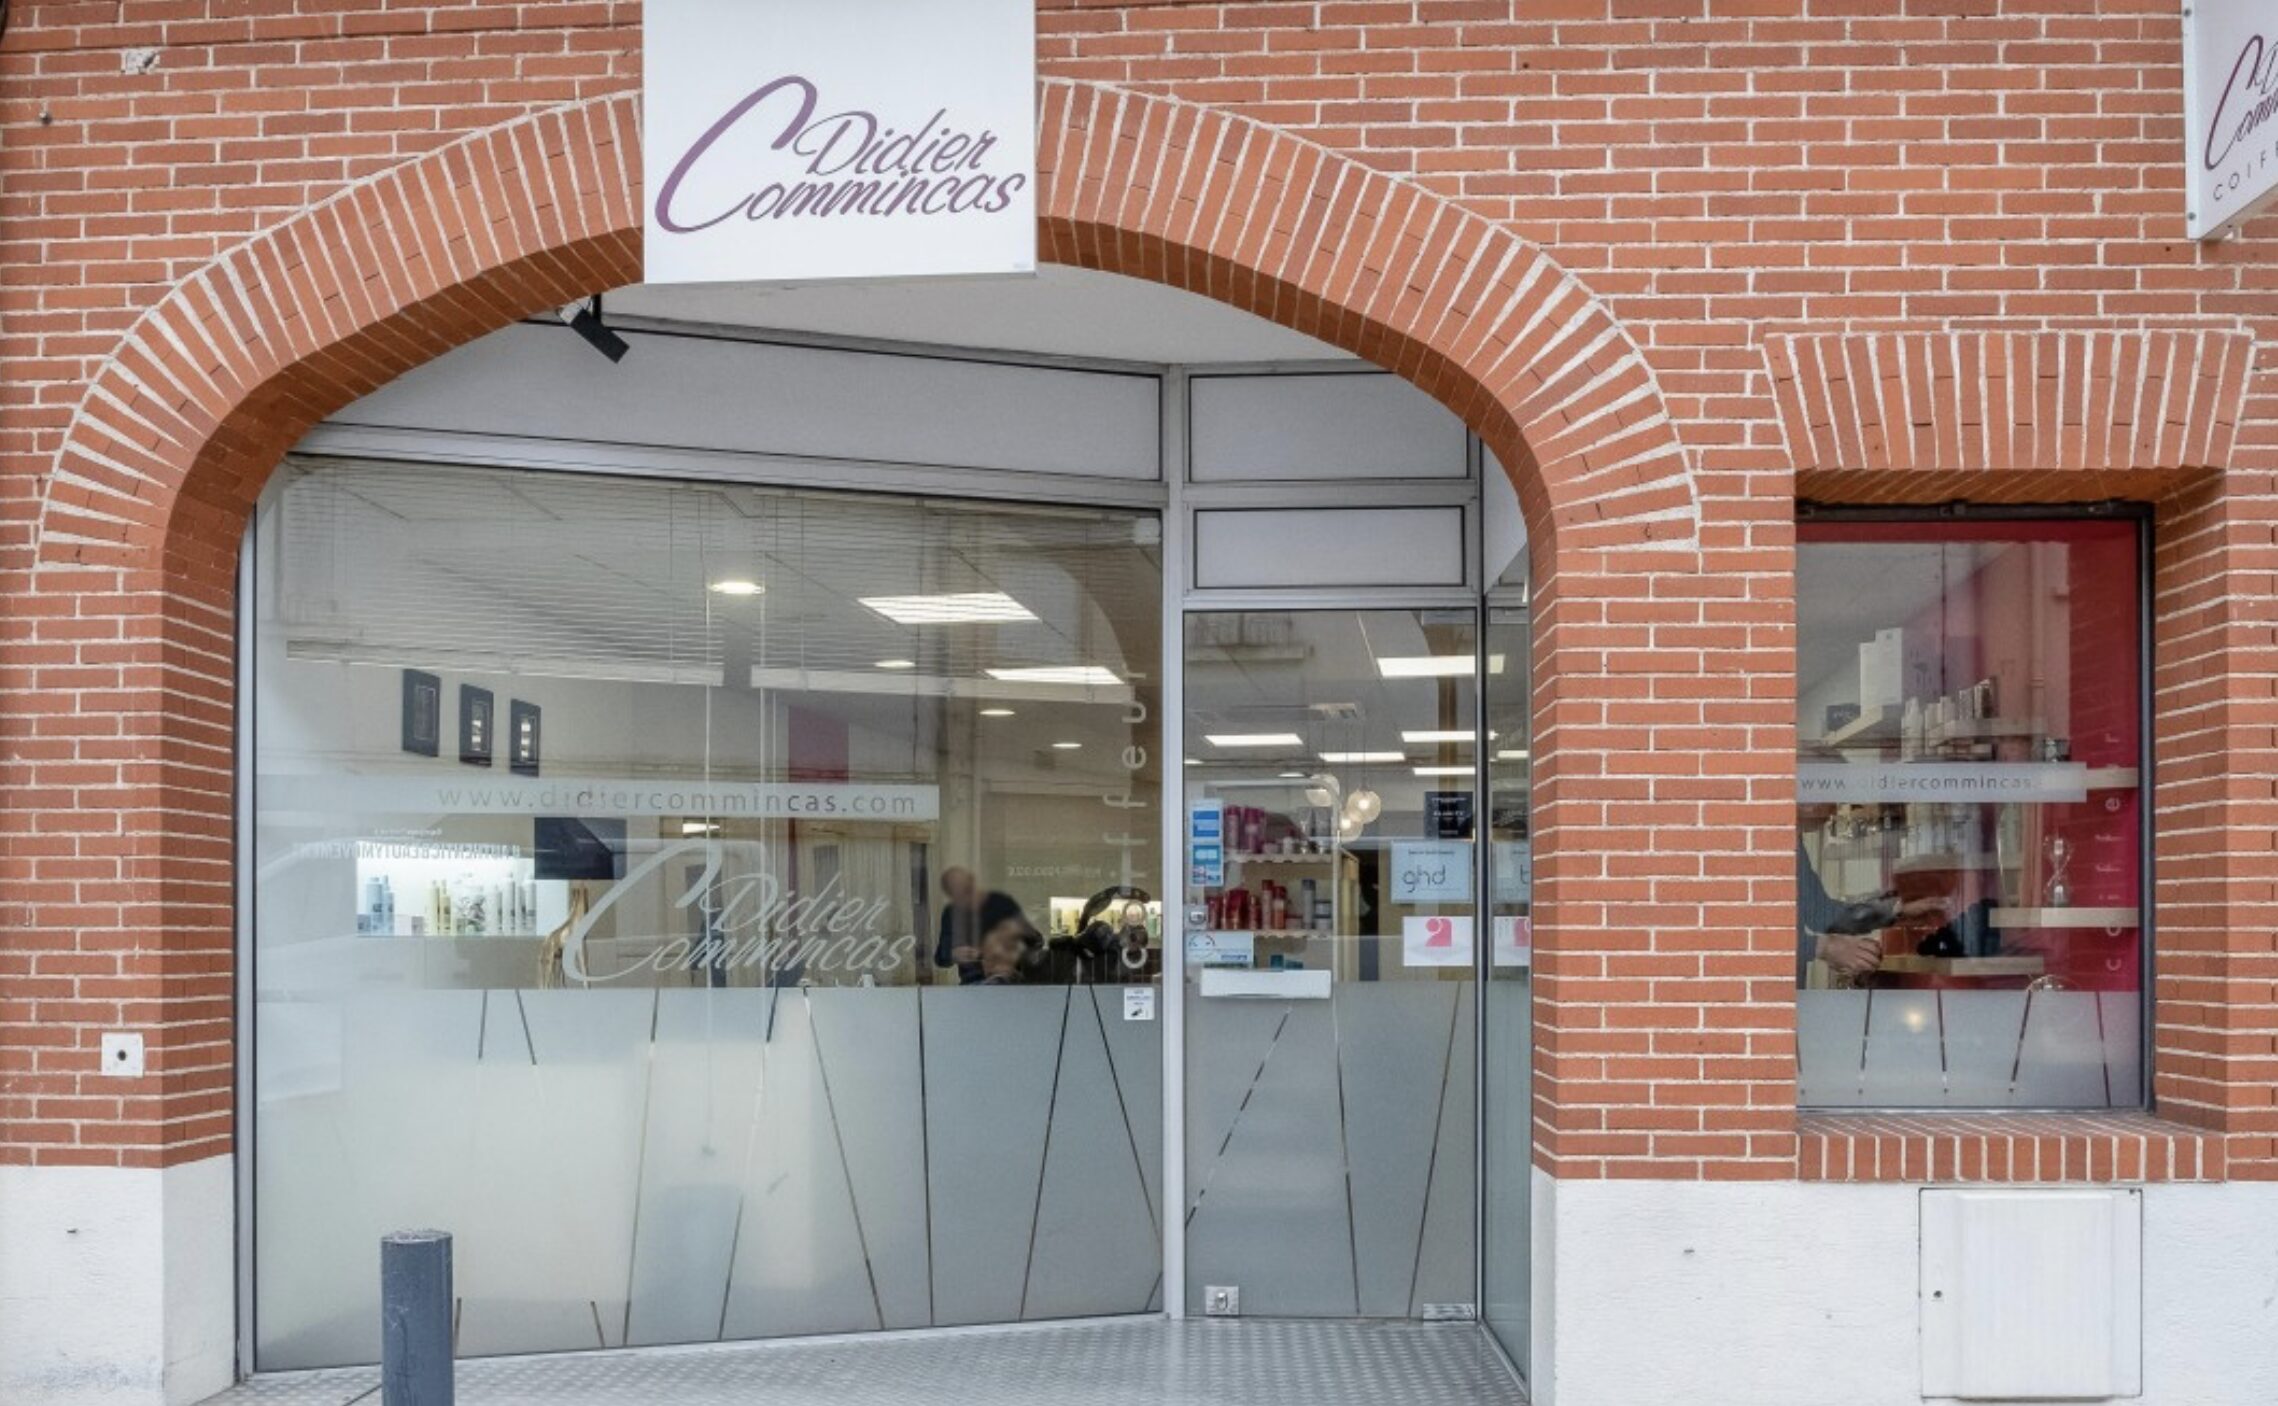 Le Salon de Coiffure Didier Commincas situé à Blagnac